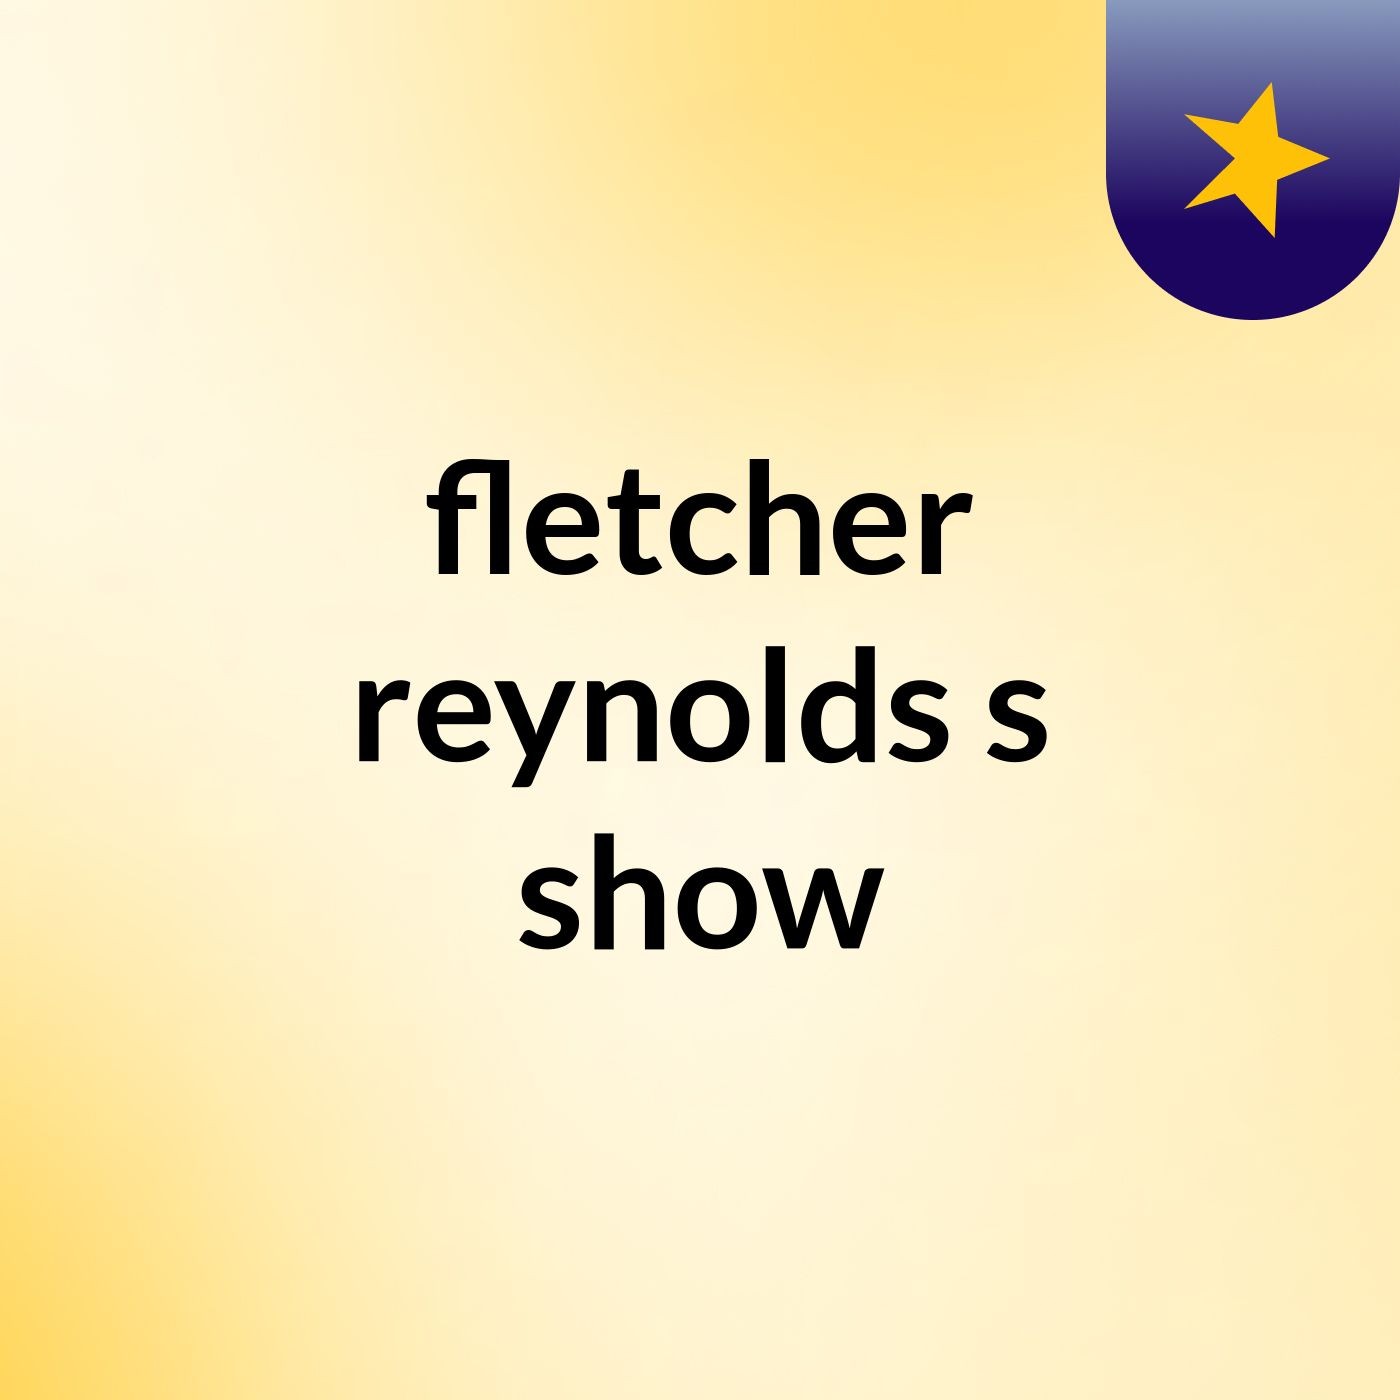 fletcher reynolds's show